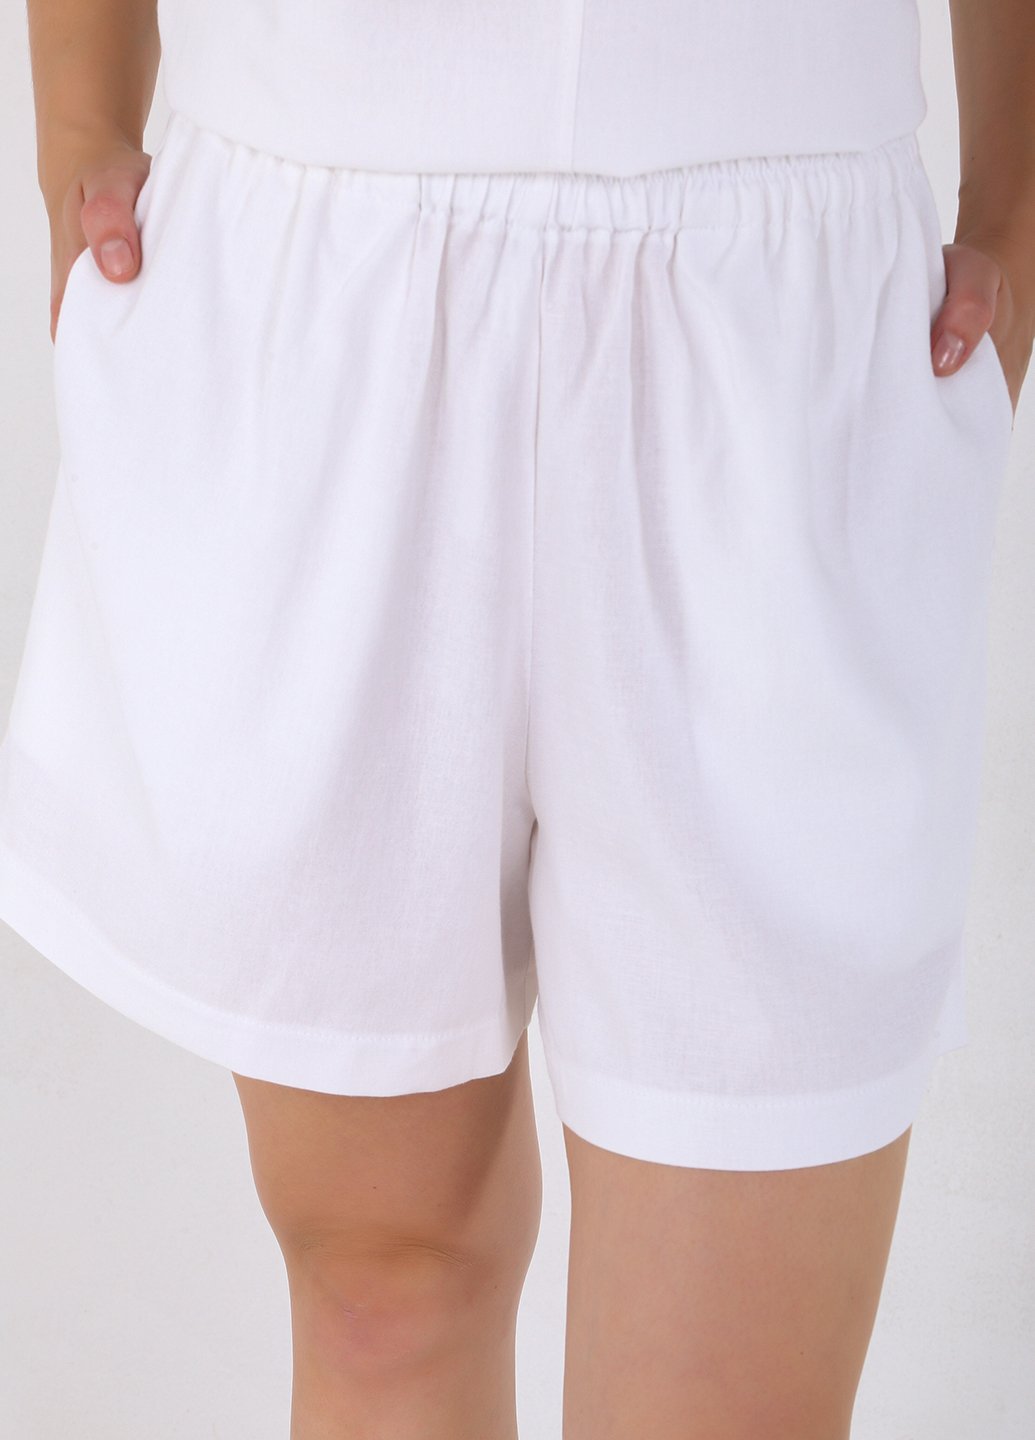 Купити Льняні шорти жіночі бермуди білого кольору Merlini Турин 300000045, розмір 42-44 в інтернет-магазині